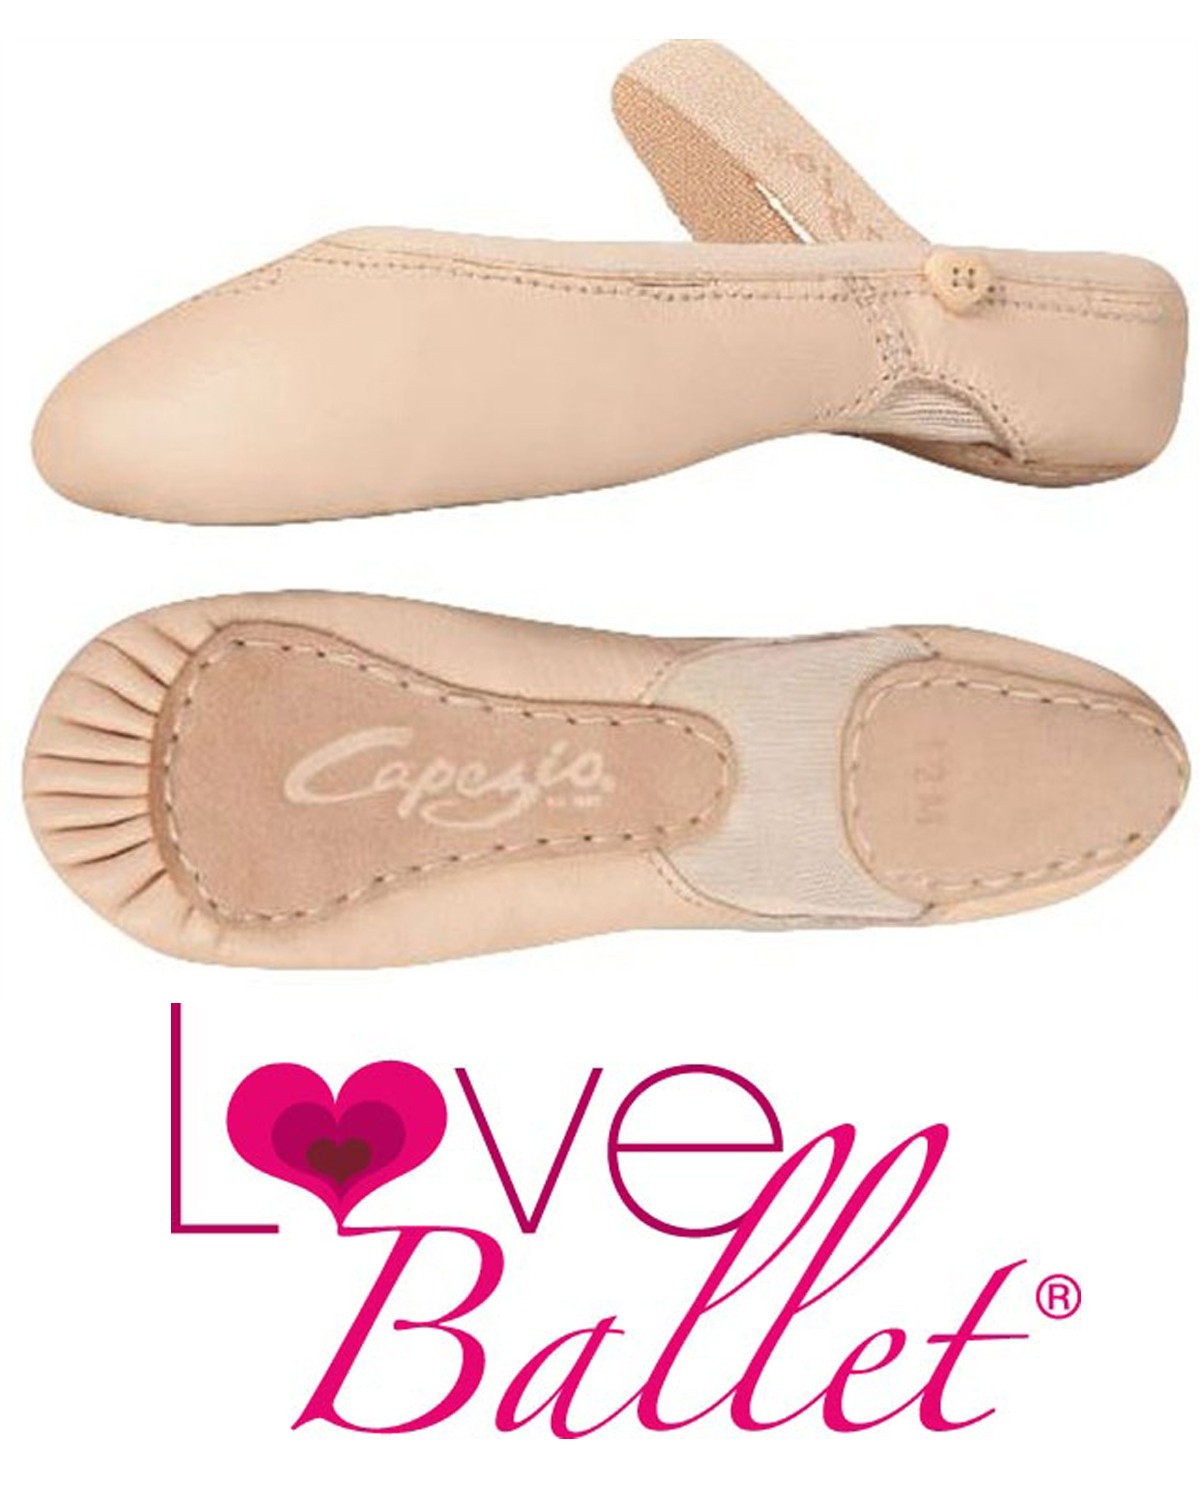 capezio love ballet shoes